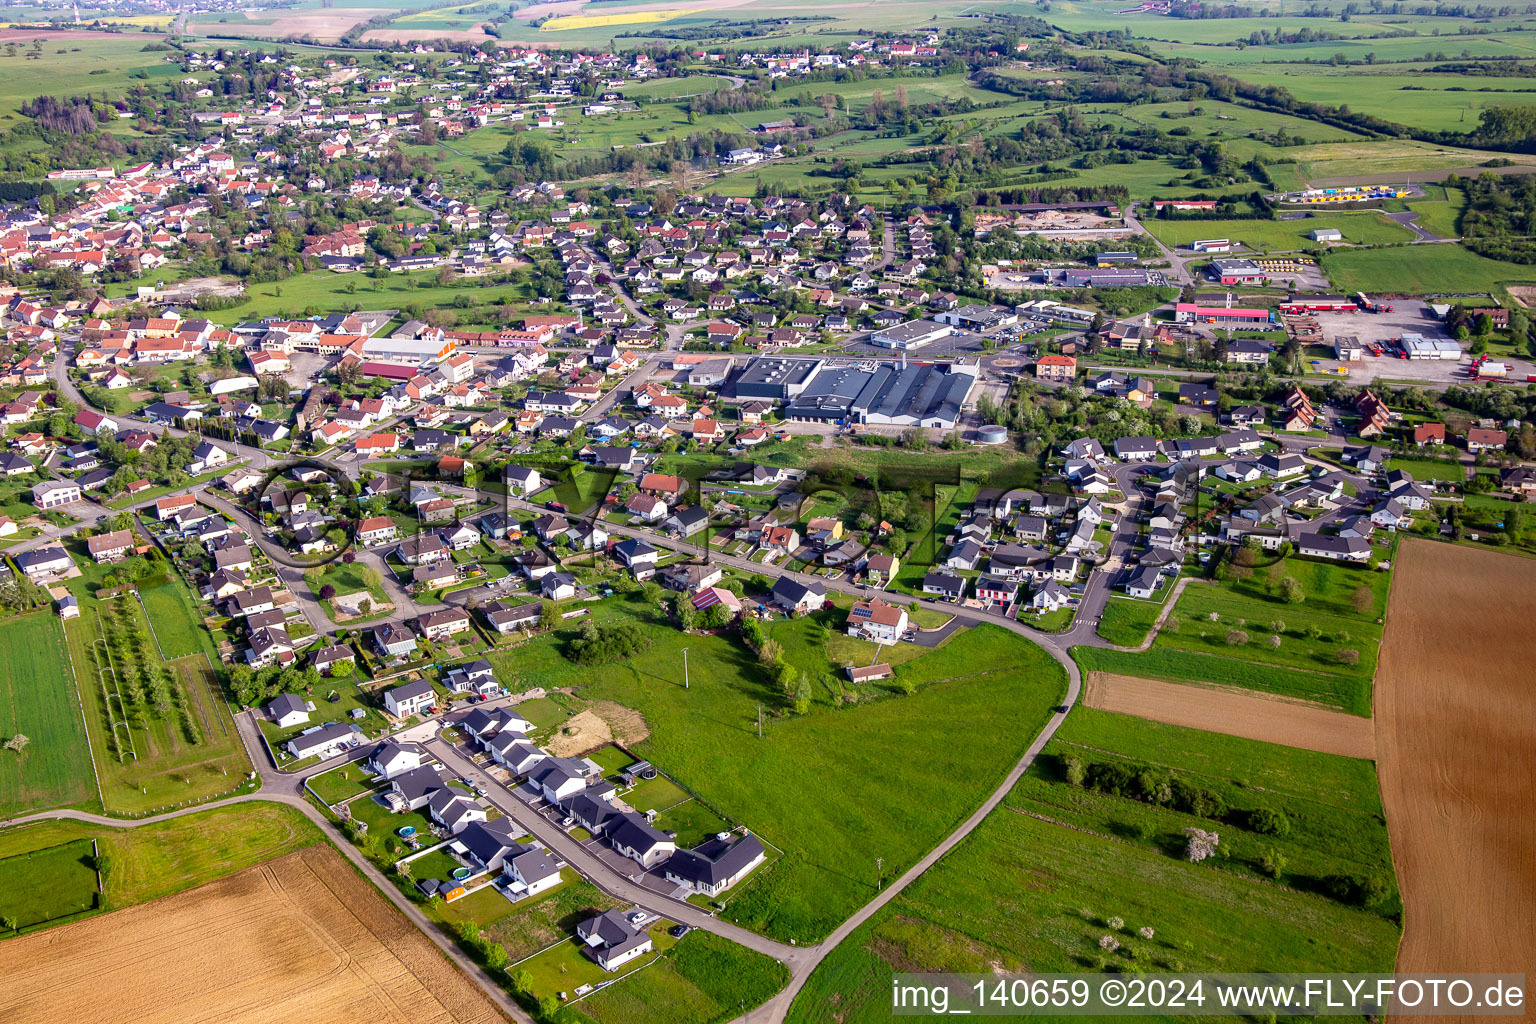 Vue aérienne de Rue du Dr. Schweitzer à Rohrbach-lès-Bitche dans le département Moselle, France